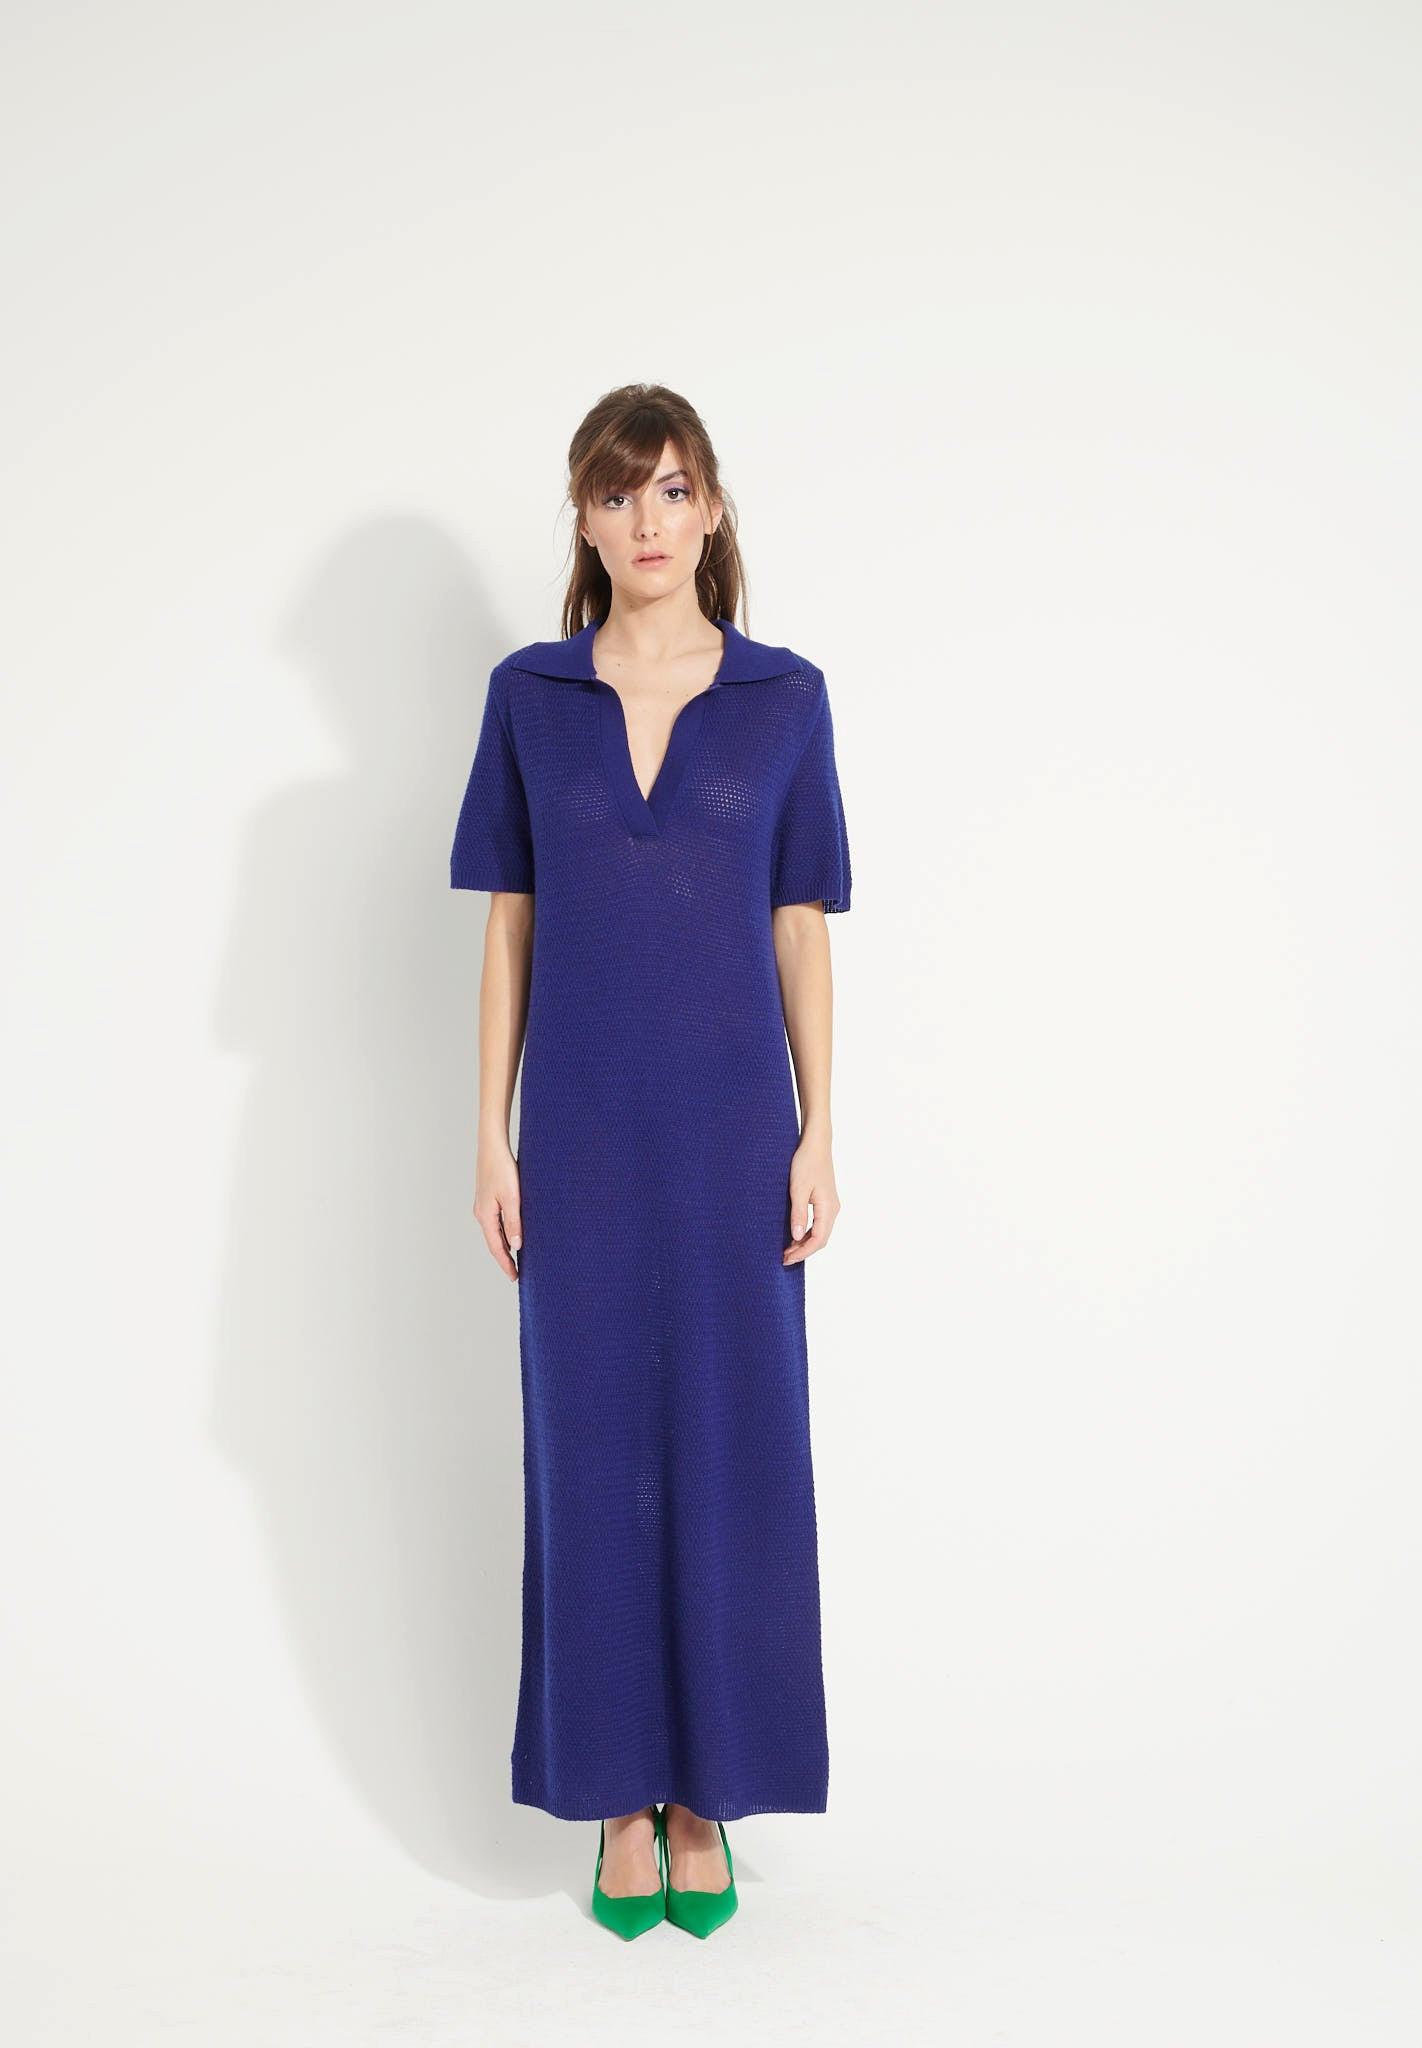 Ava 18 Langes Kleid Mit Polokragen - 100% Kaschmir, Entjungfert Damen Nachtblau M von Studio Cashmere8